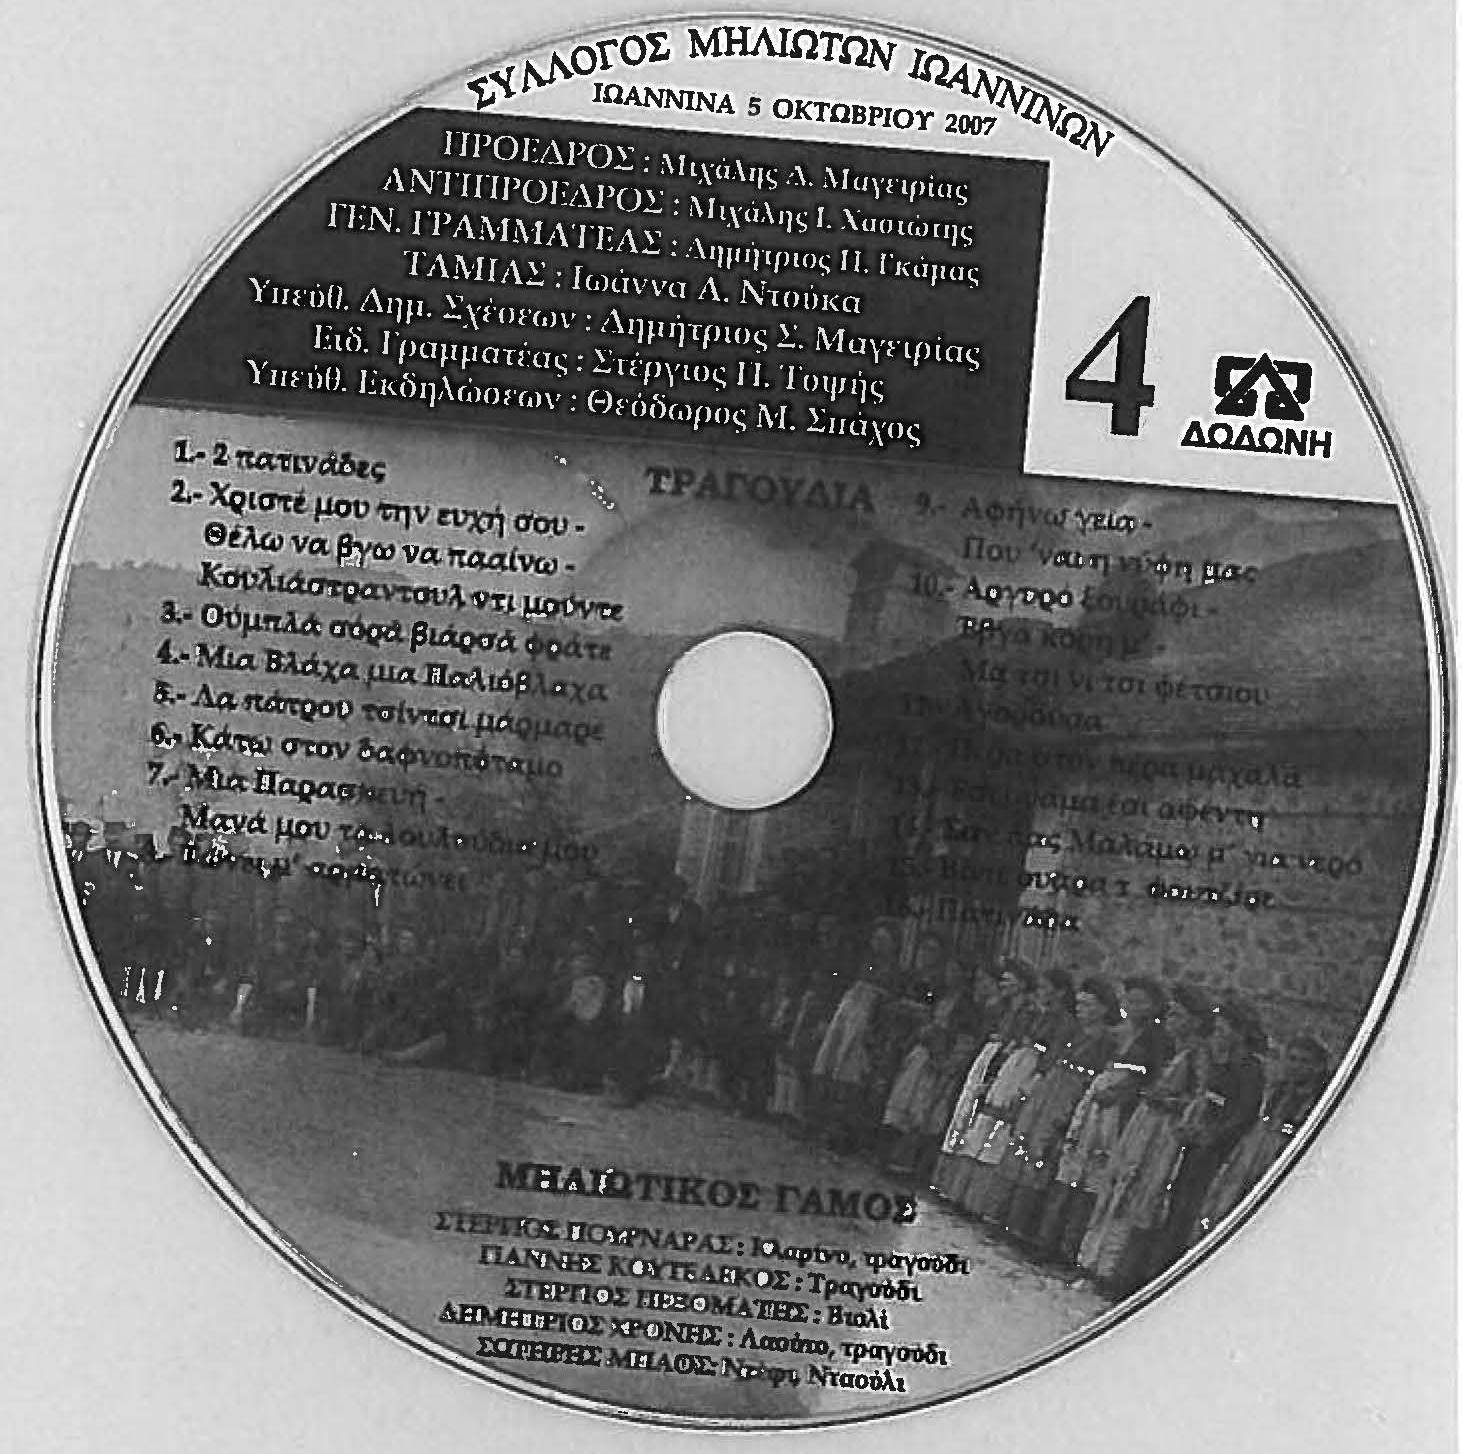 ΣΥΛΛΟΓΟΣ ΜΗΛΙΩΤΩΝ ΙΩΑΝΝΙΝΩΝ - ΤΡΑΧΟΥΔΙΑ ΜΗΛΙΑΣ ΜΕΤΣΟΒΟΥ 2009 CD4